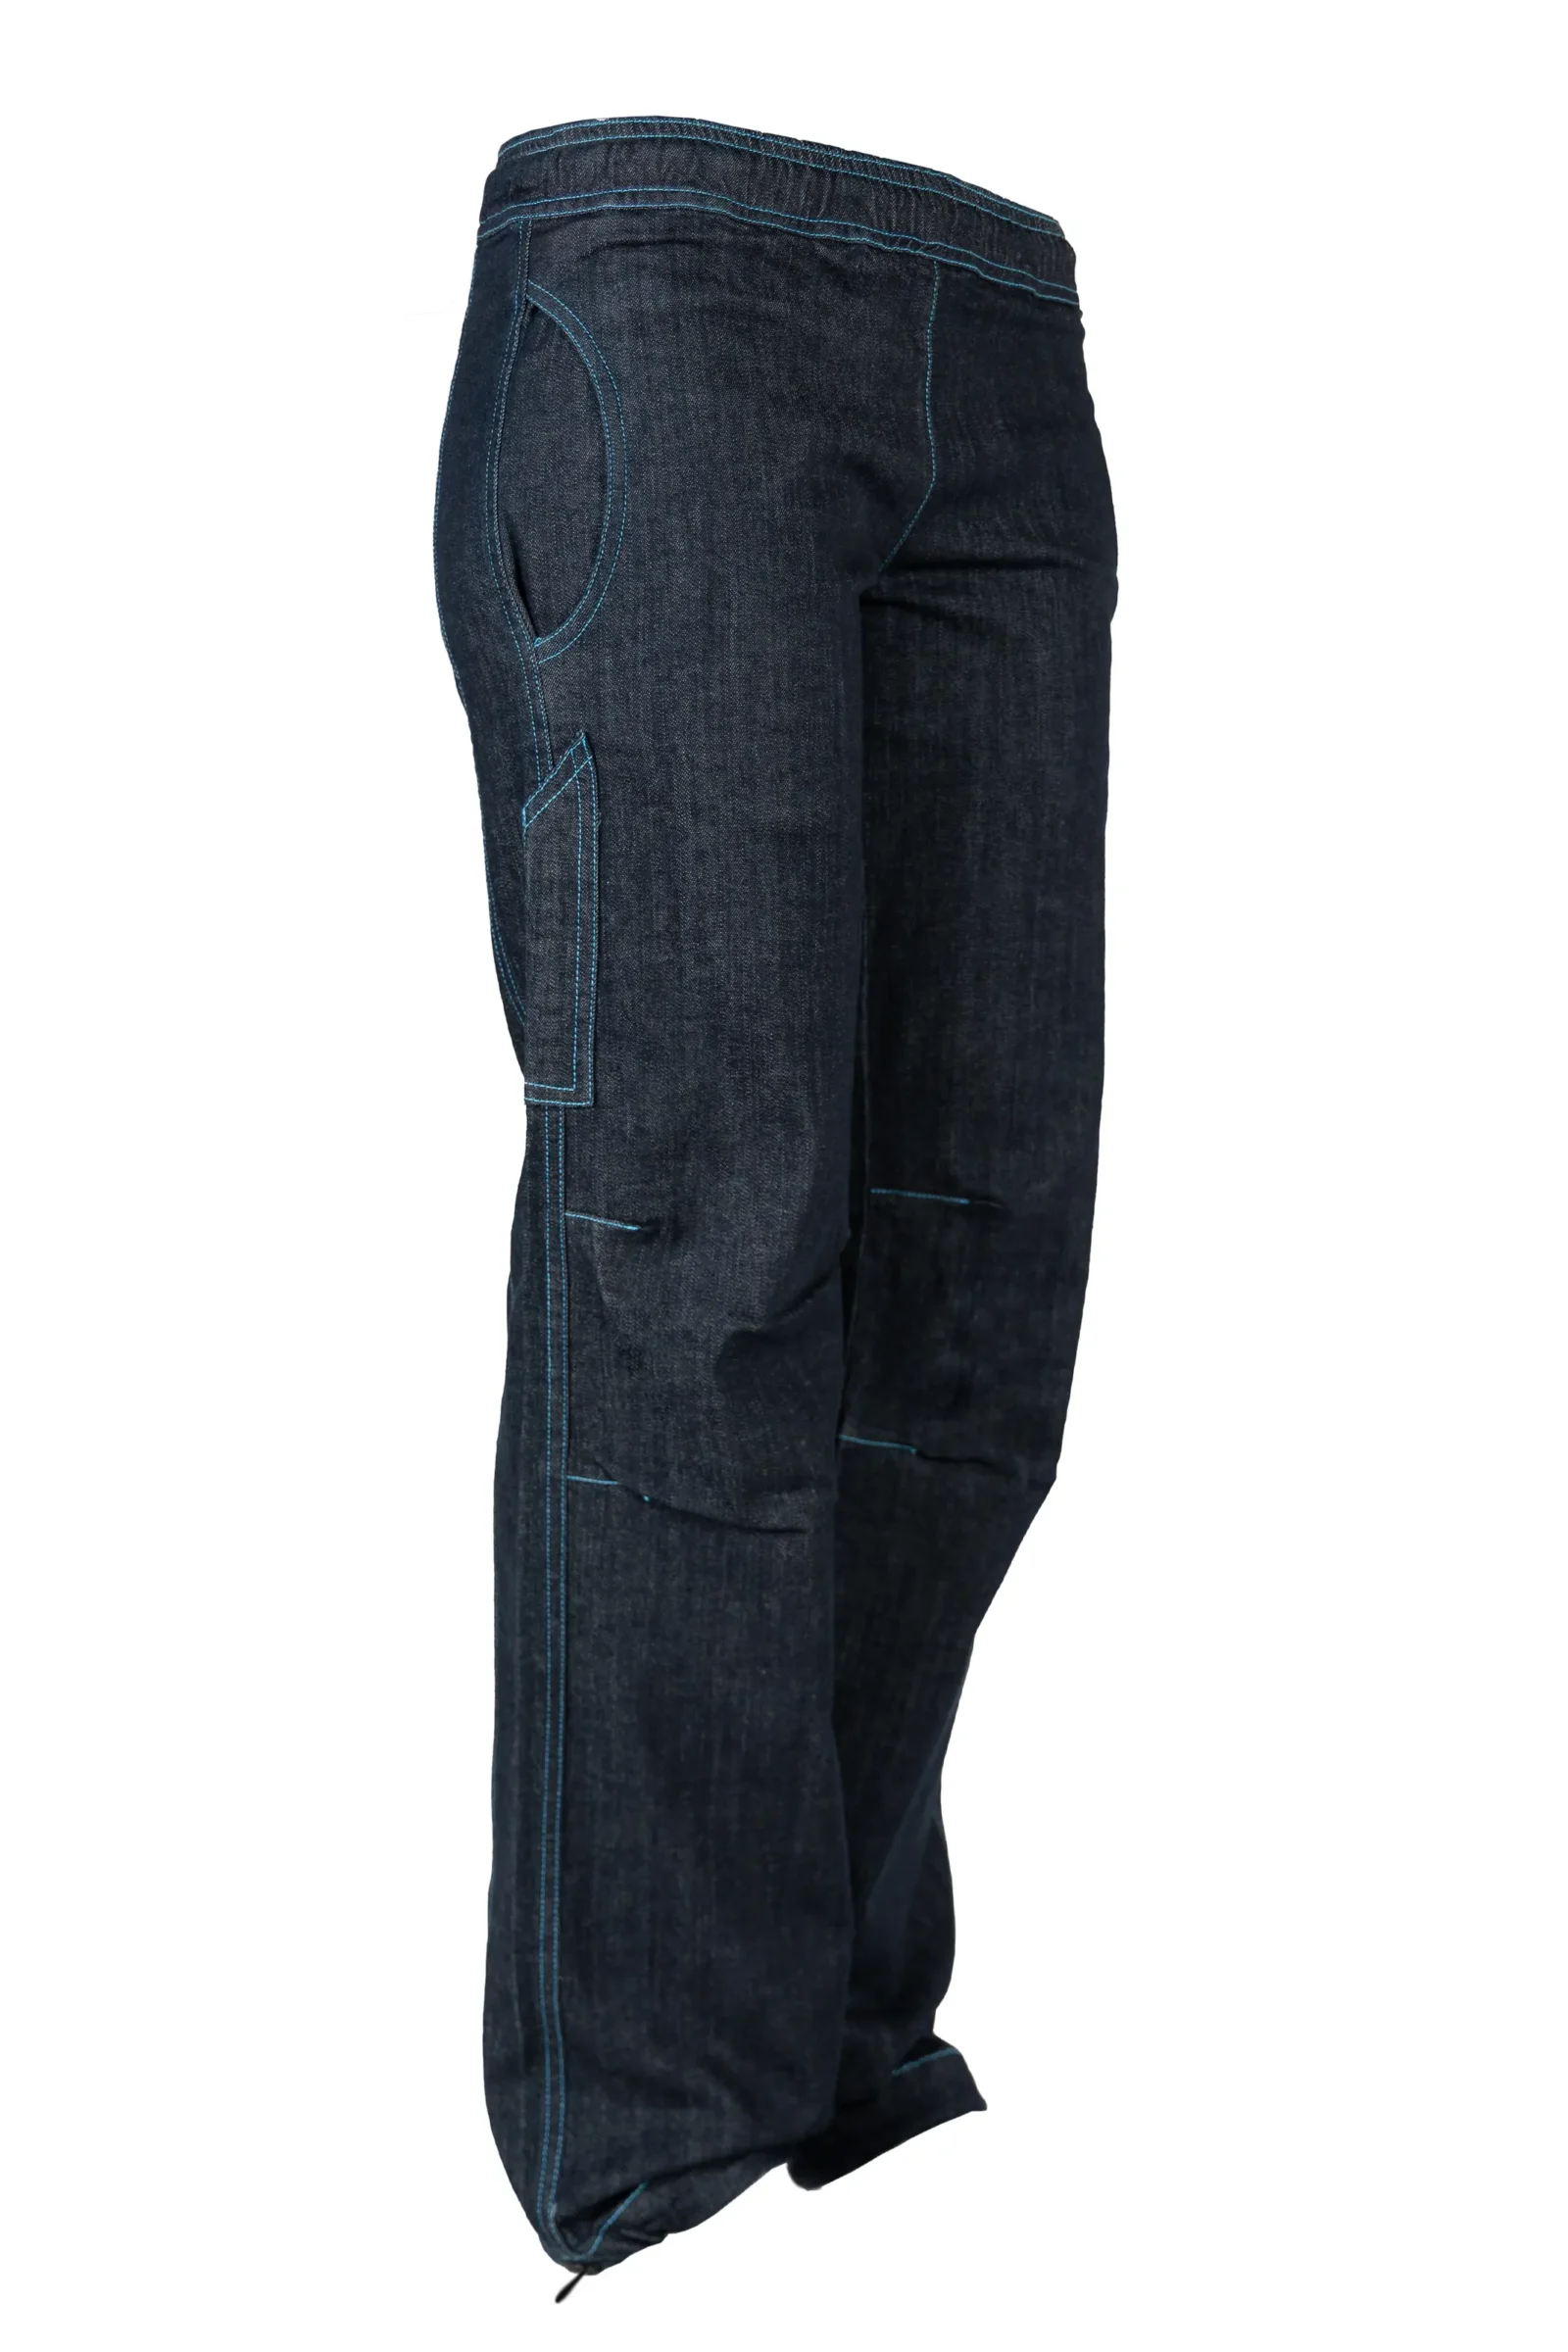 Jeans climbing da donna - denim filo azzurro - VIOLET Monvic